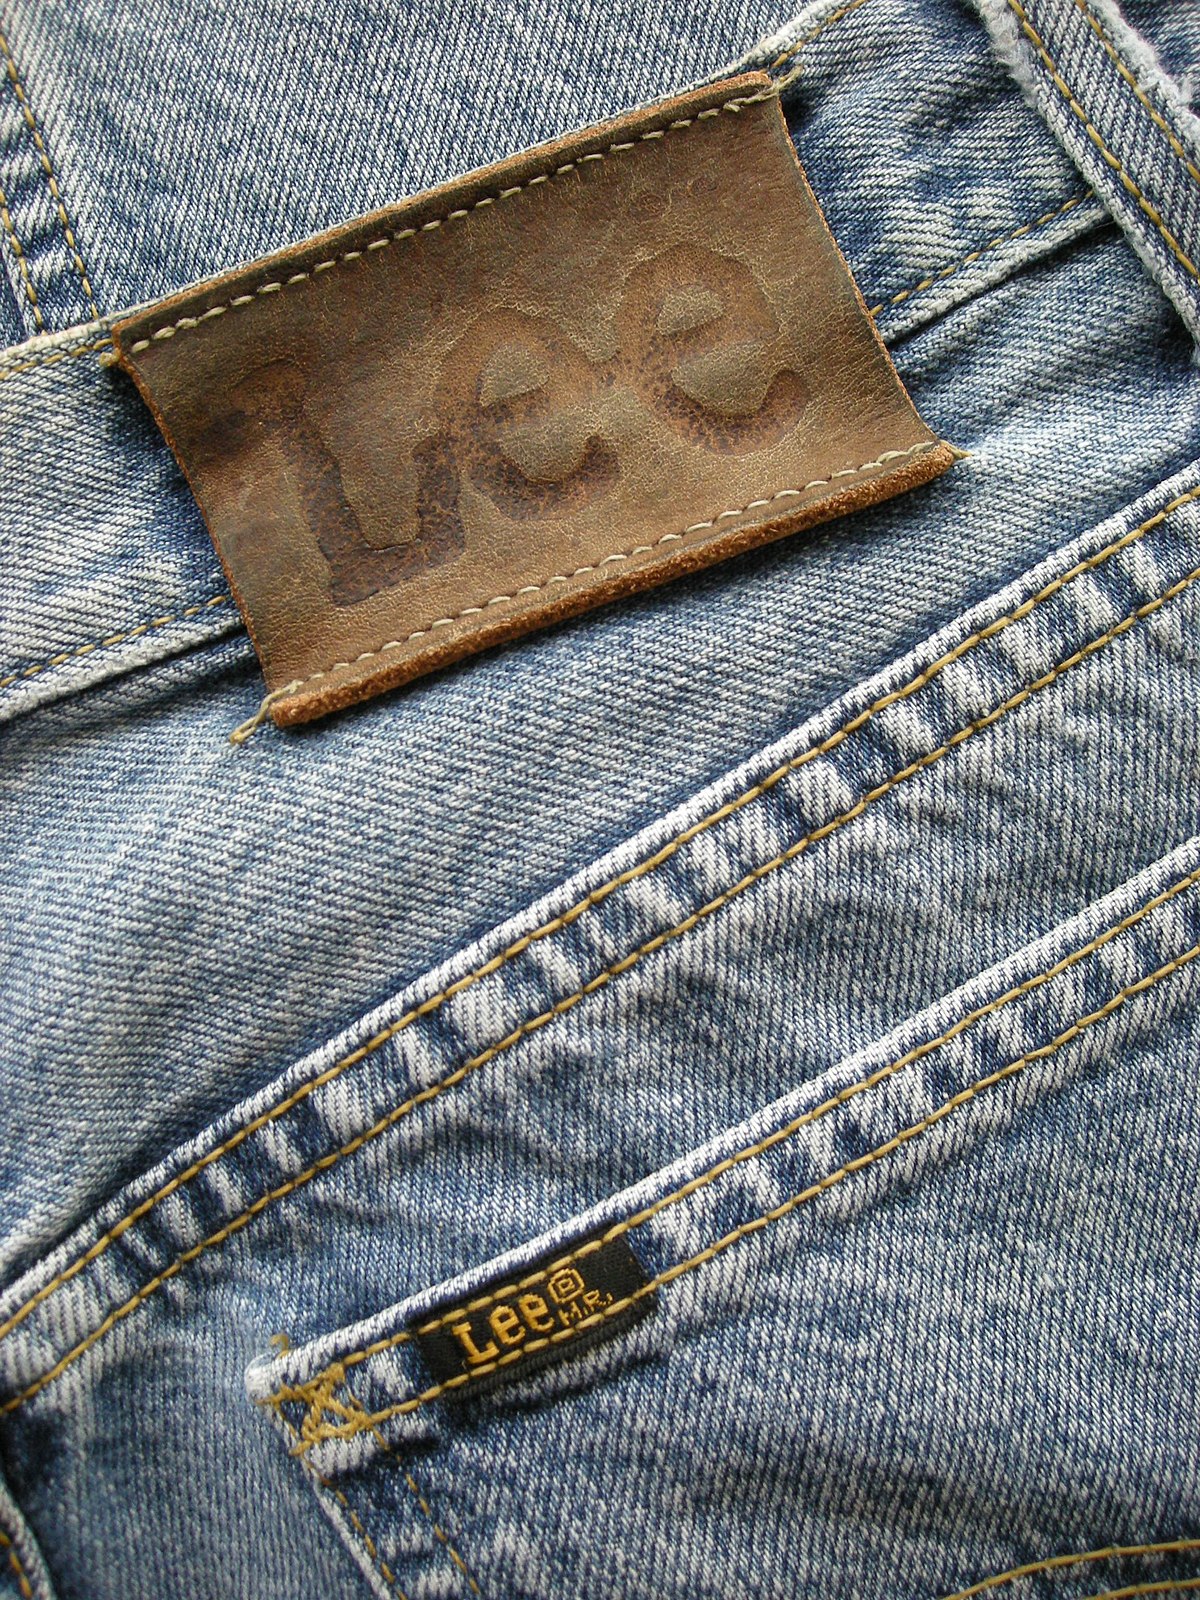 lee jeans fr